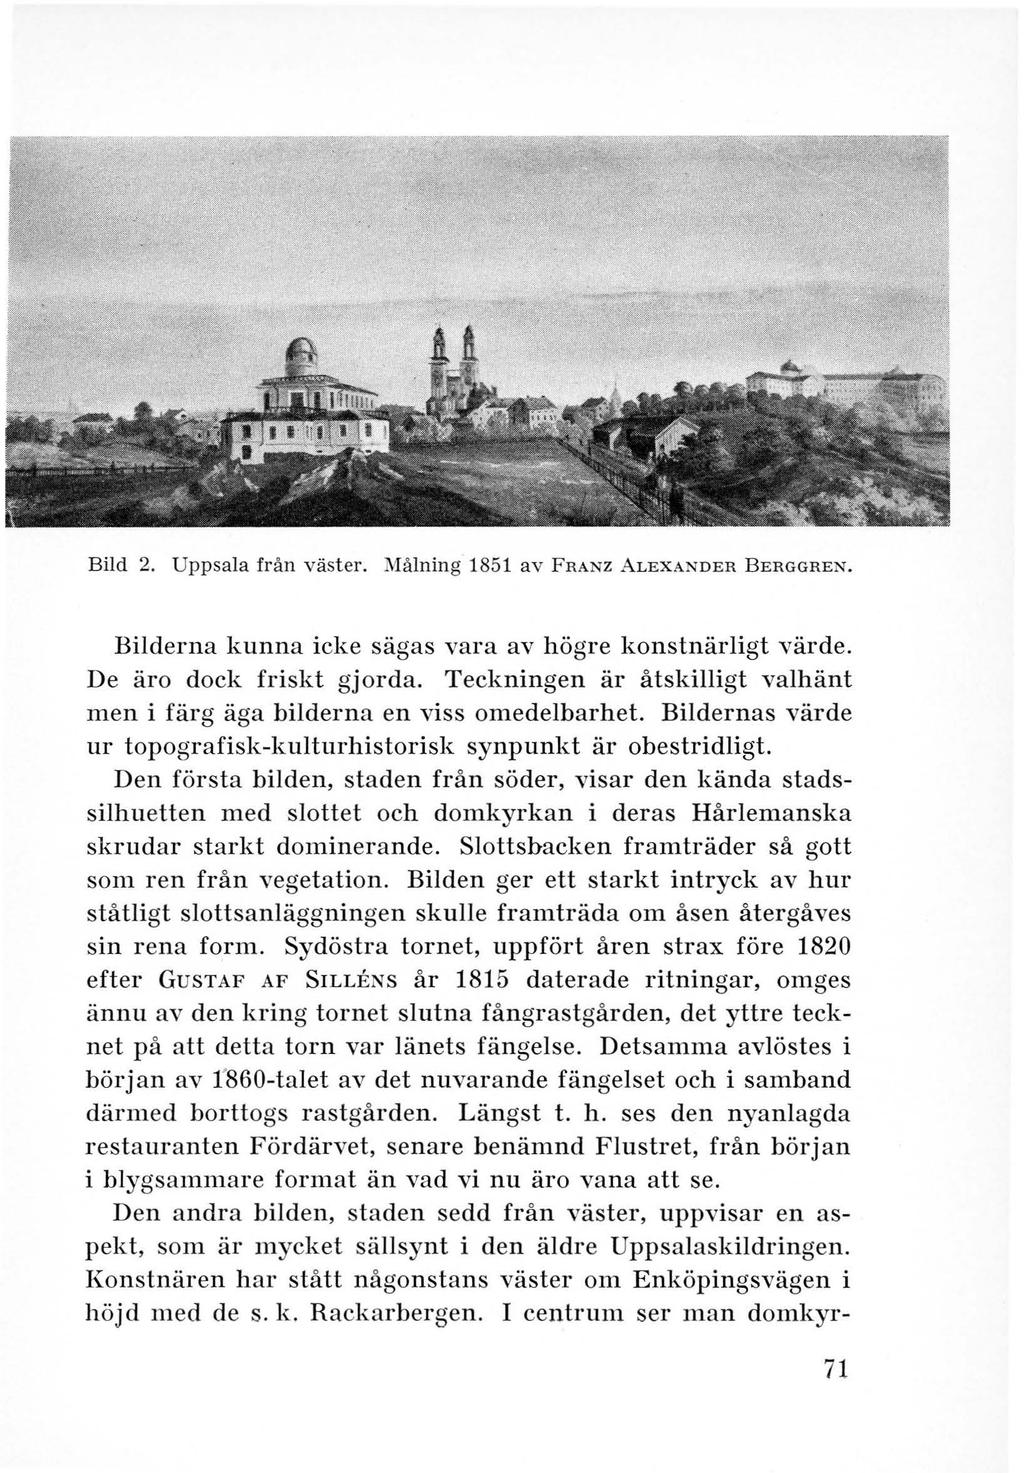 Bild 2. Uppsala från väst er. Målning 1851 av FRANZ ALEXANDER BERGGREN. Bilderna kunna icke sägas vara av högre konstnärligt värde. De äro dock friskt gjorda.